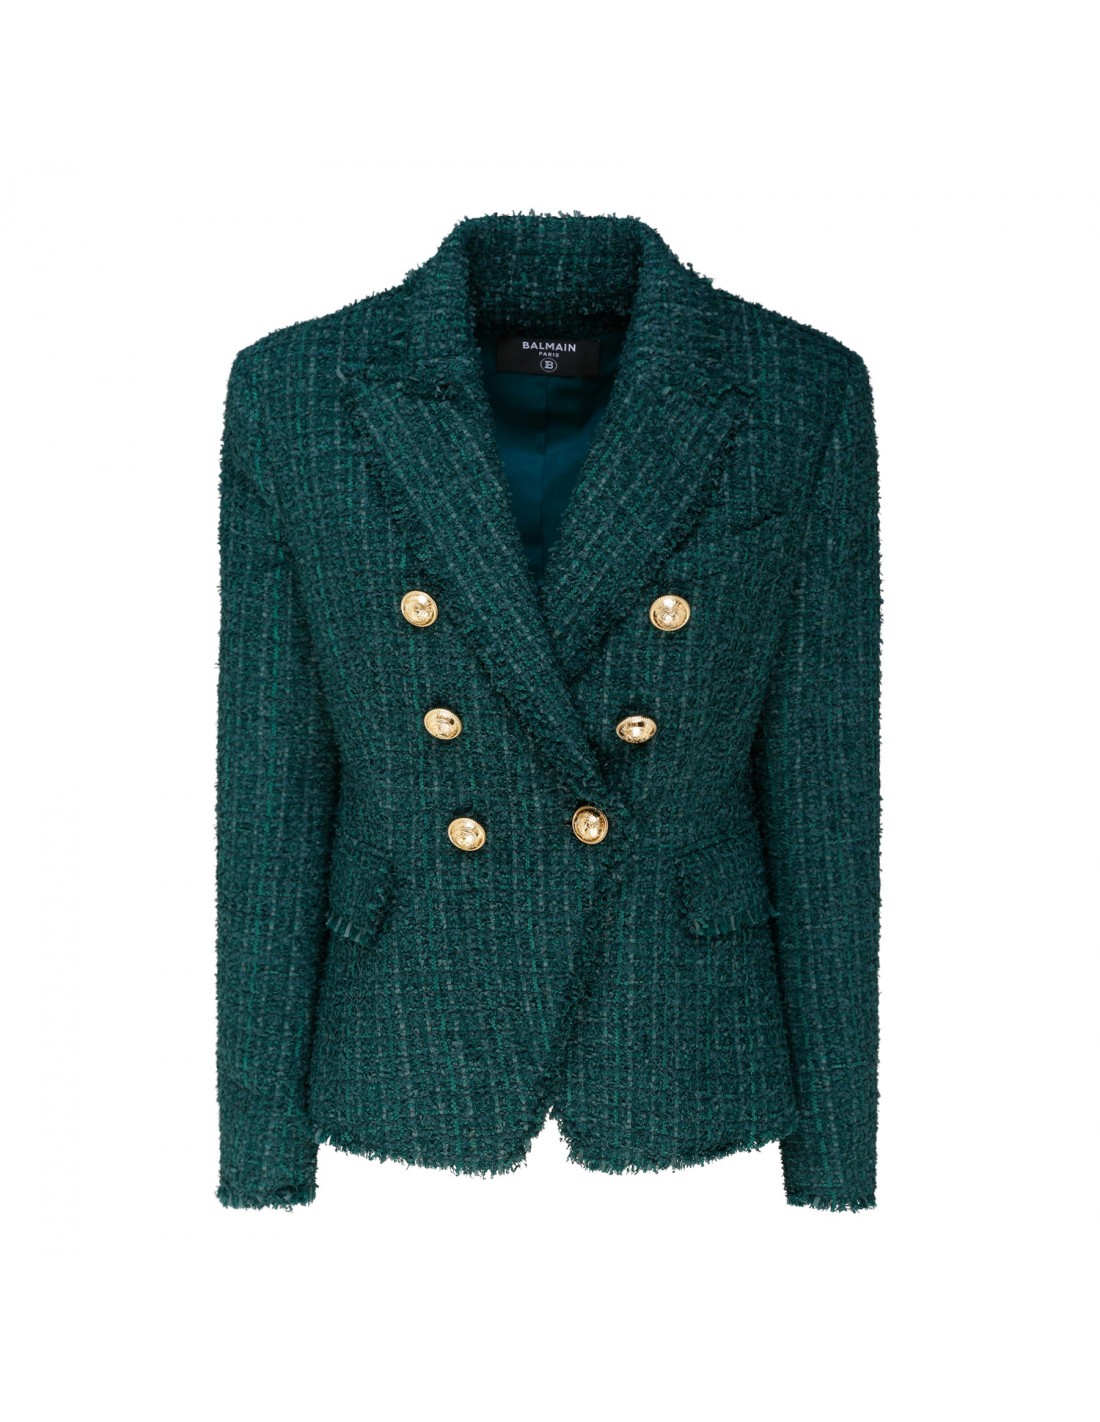 Green tweed jacket